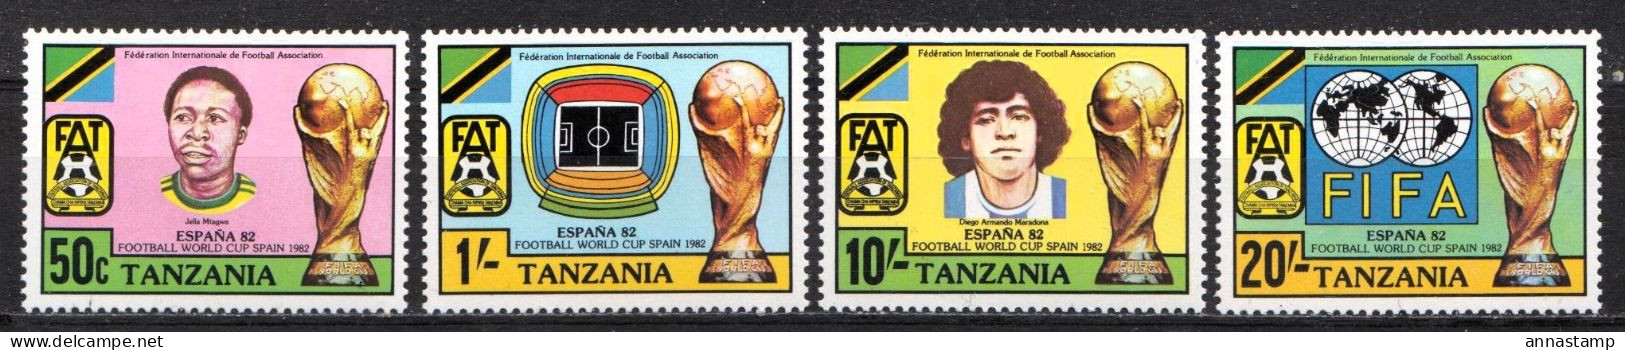 Tanzania MNH Set - 1982 – Spain